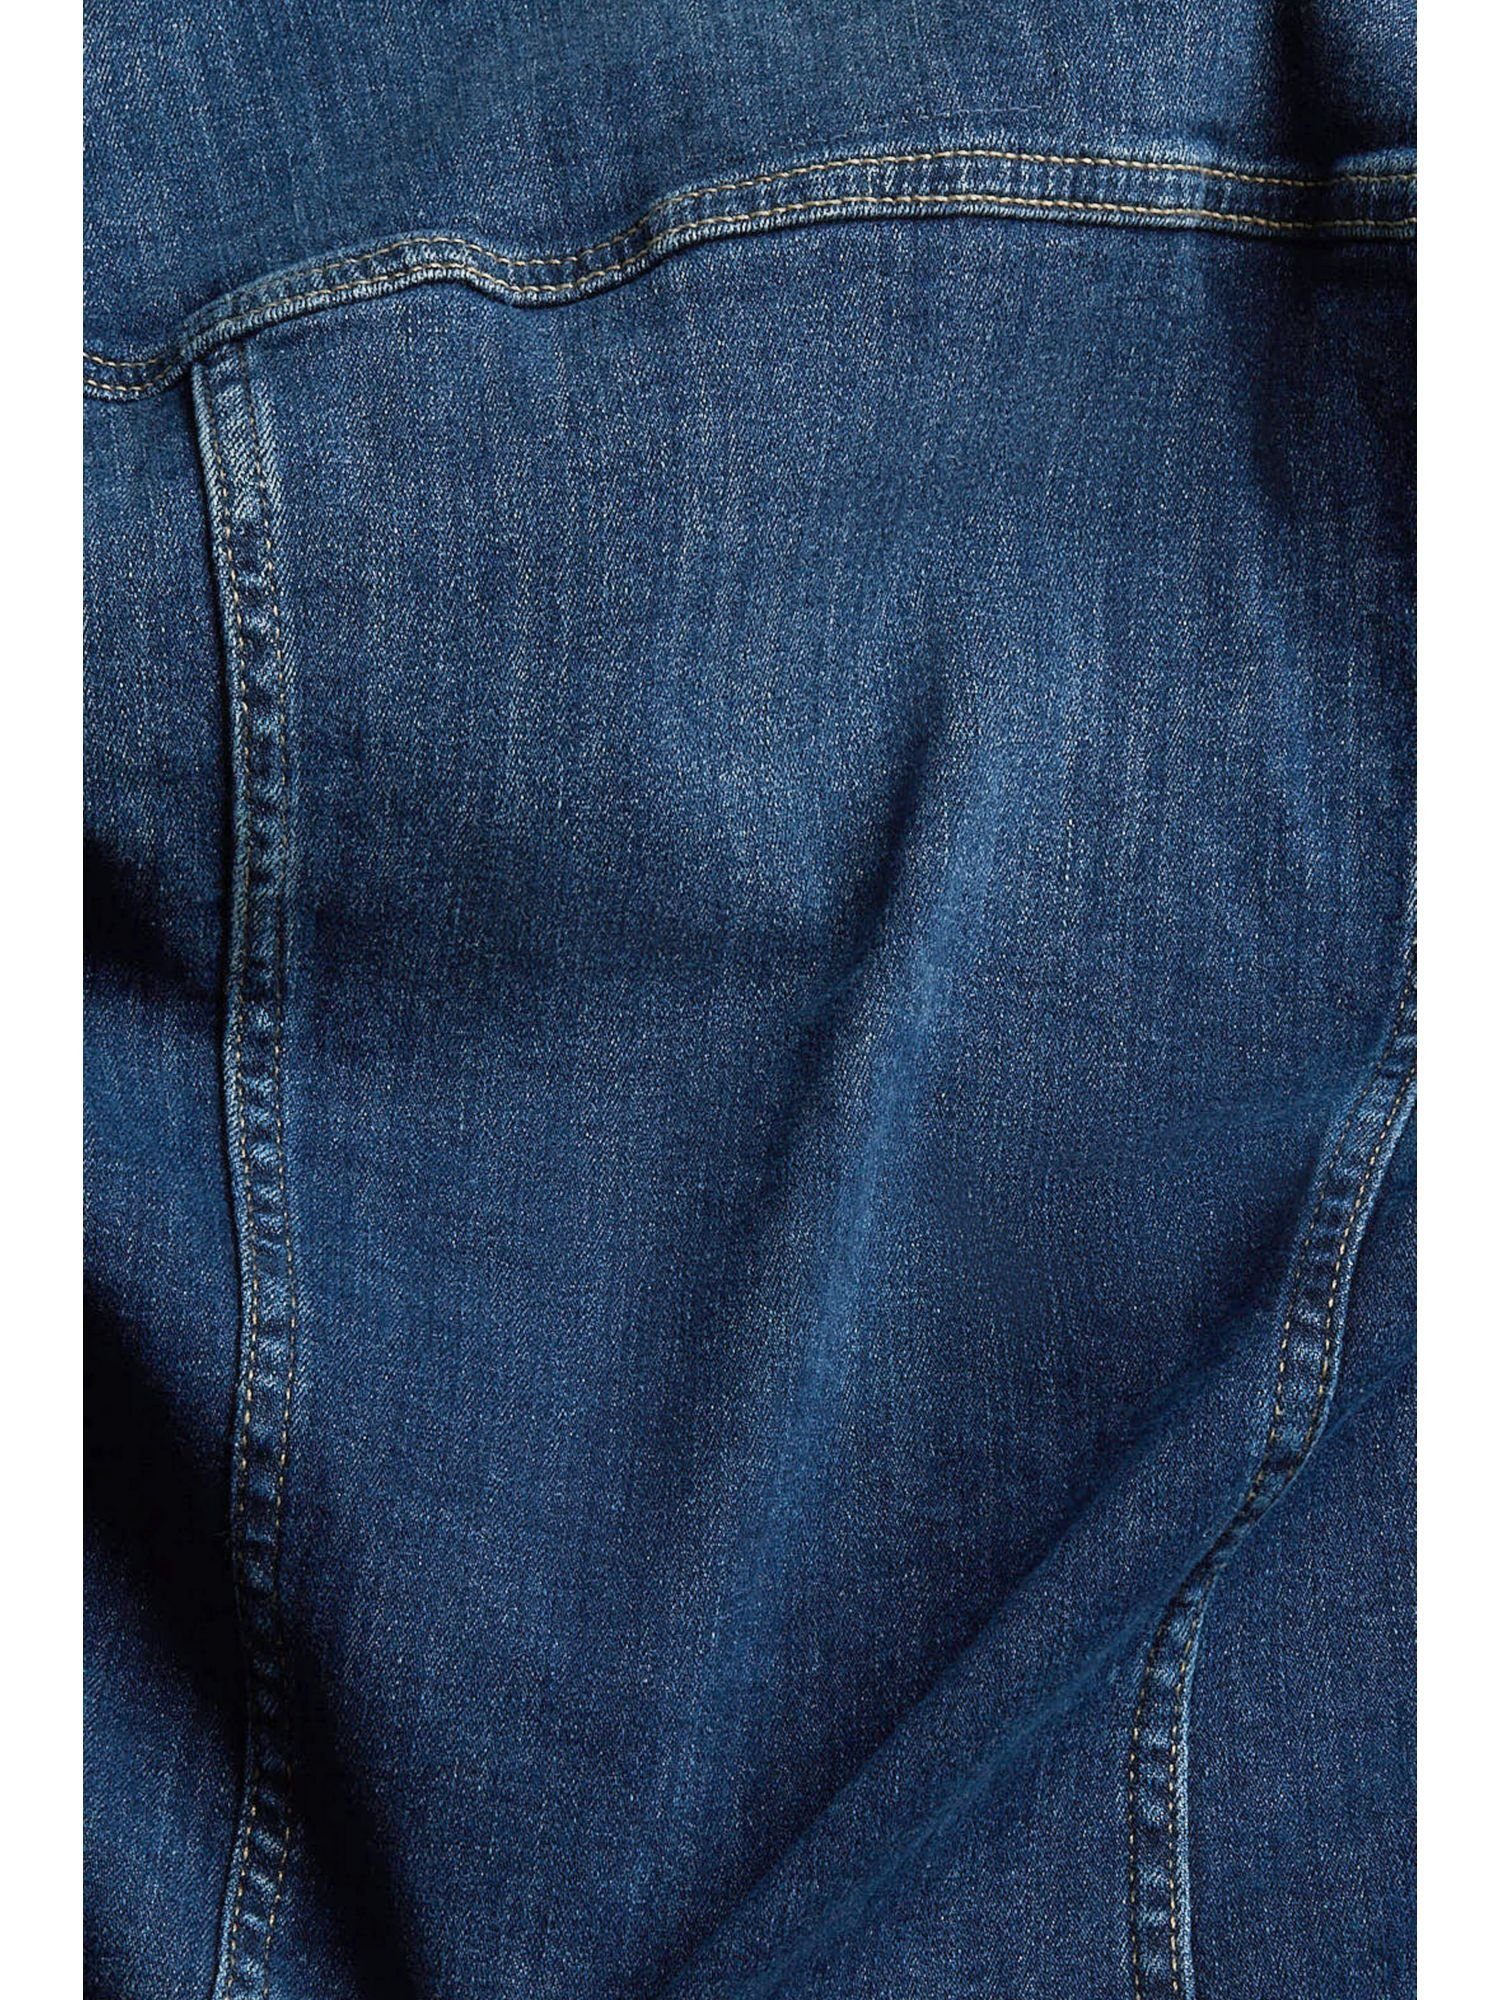 Esprit Jeansjacke DARK WASHED Jeansjacke schmaler in Passform BLUE